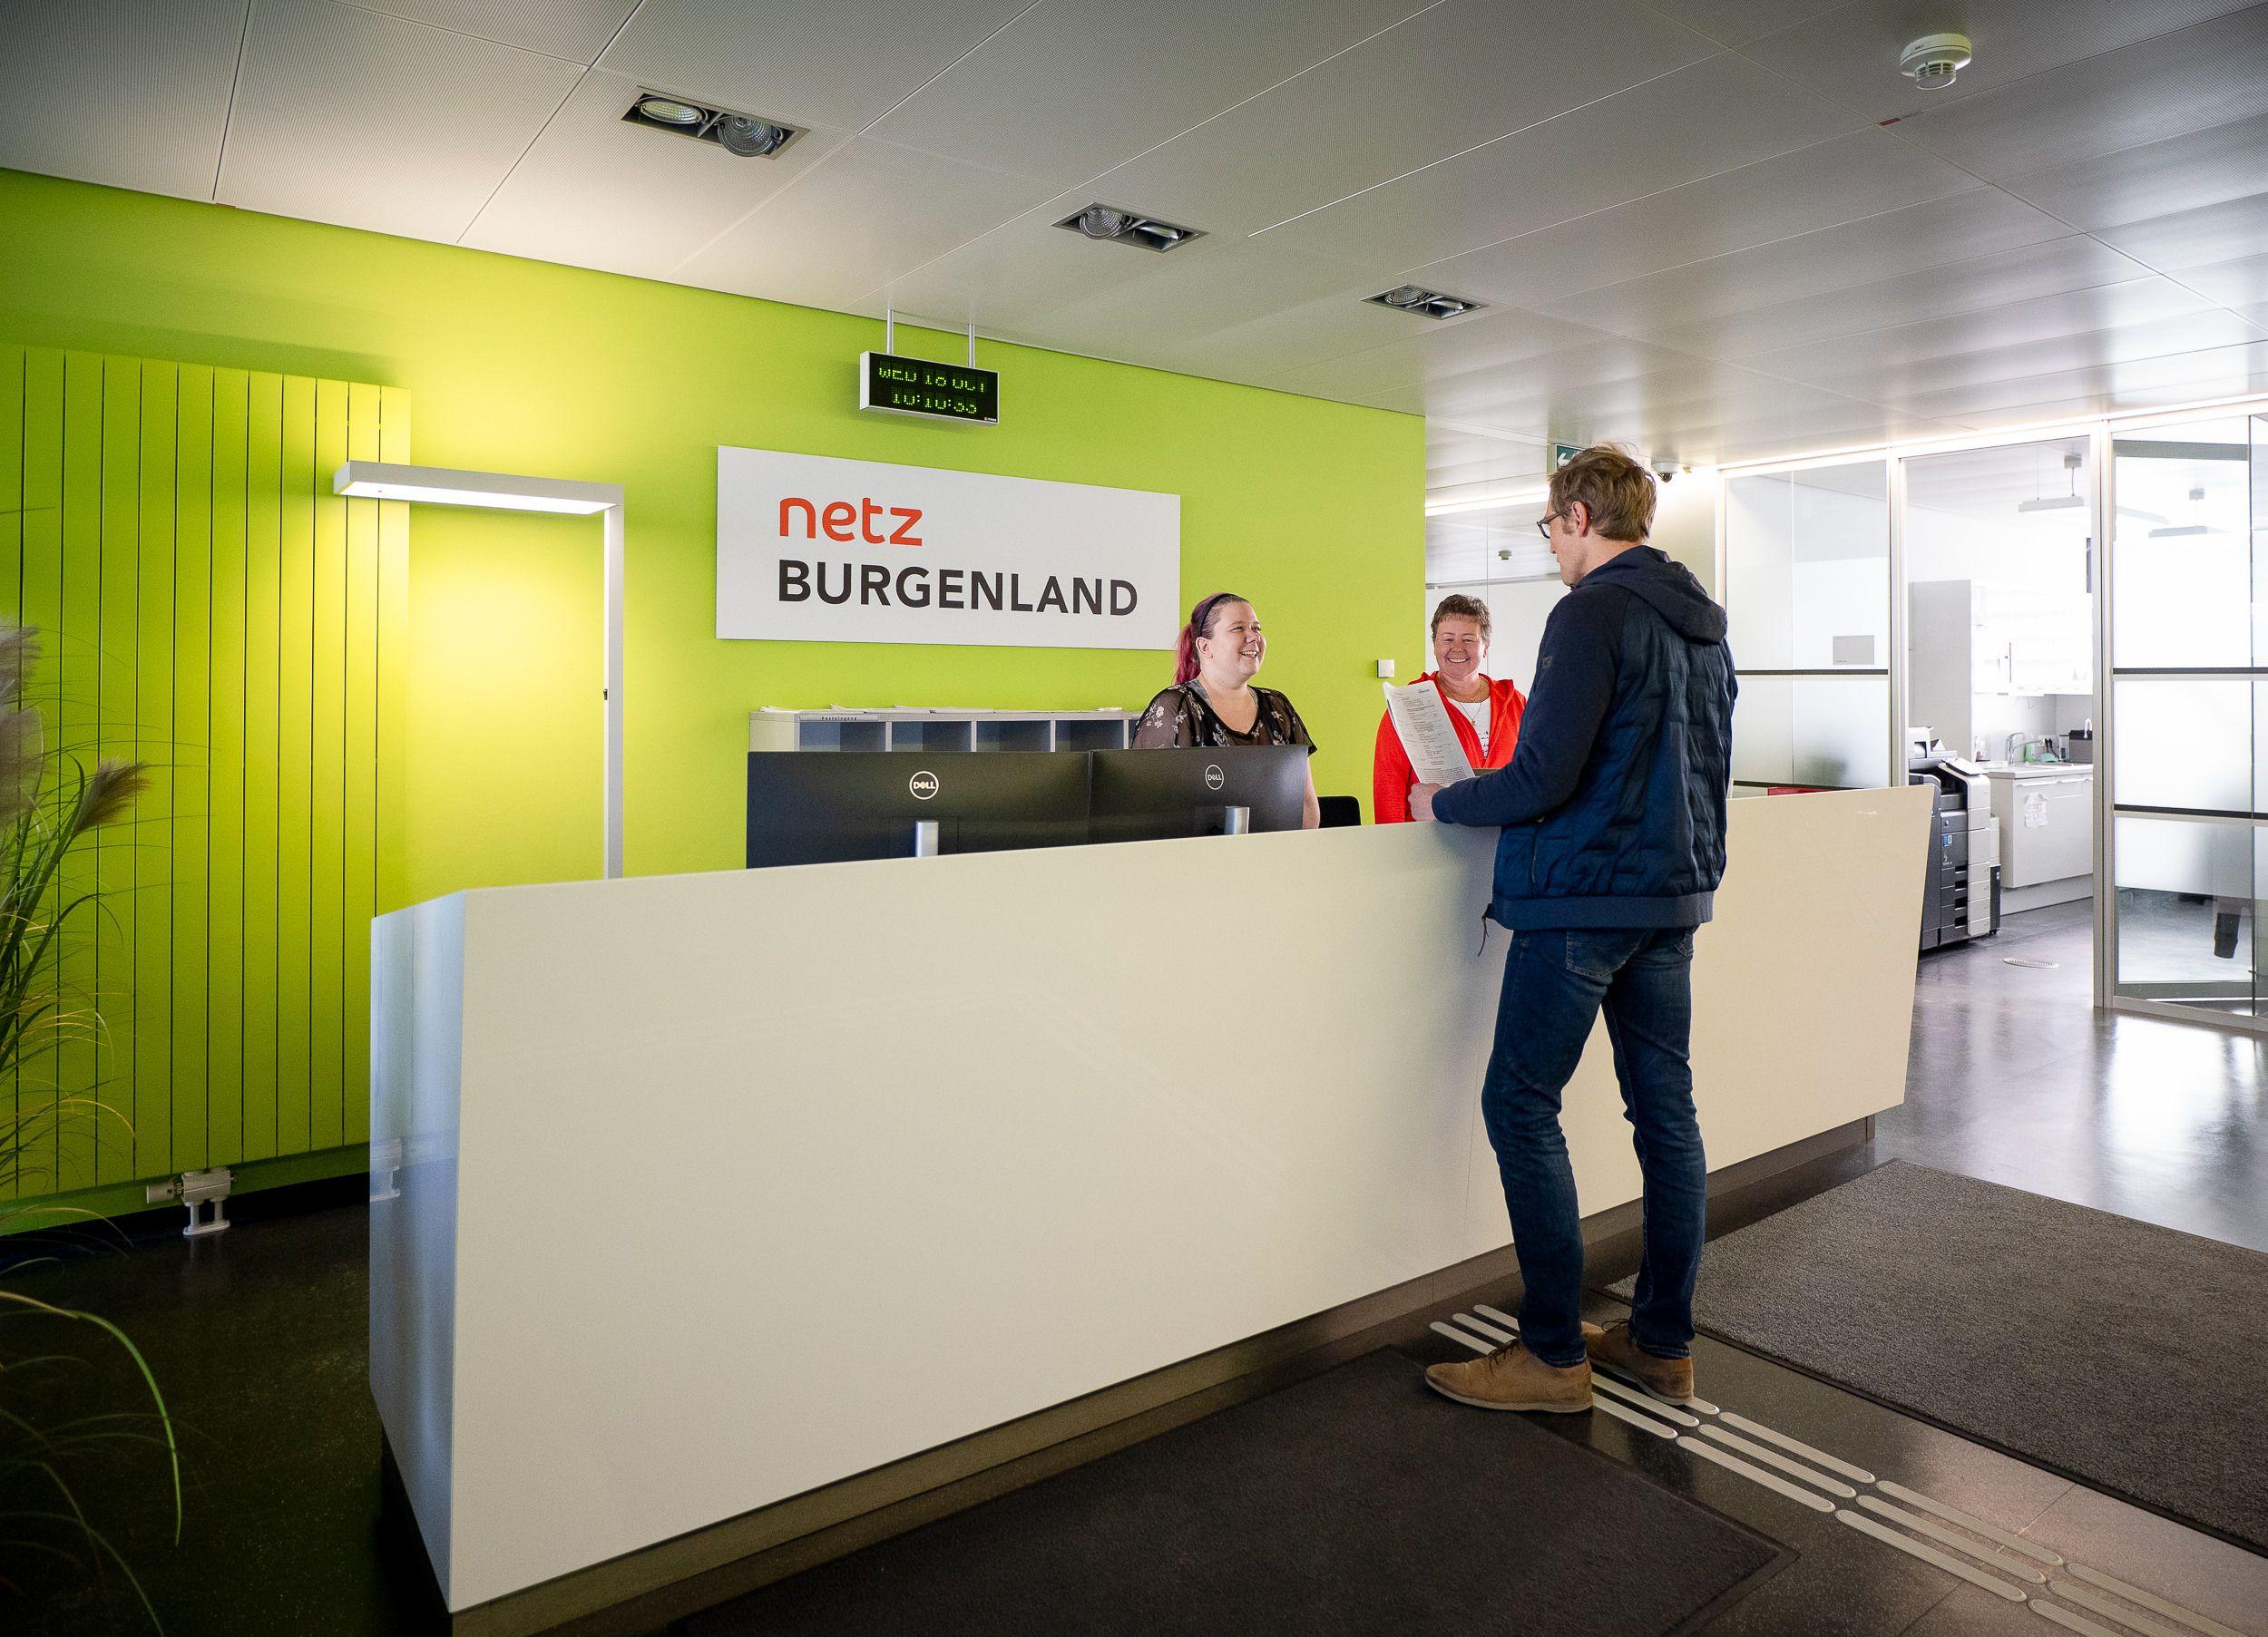 Kundenempfangsbereich von Netz Burgenland mit zwei Mitarbeitern und einem Kunden.